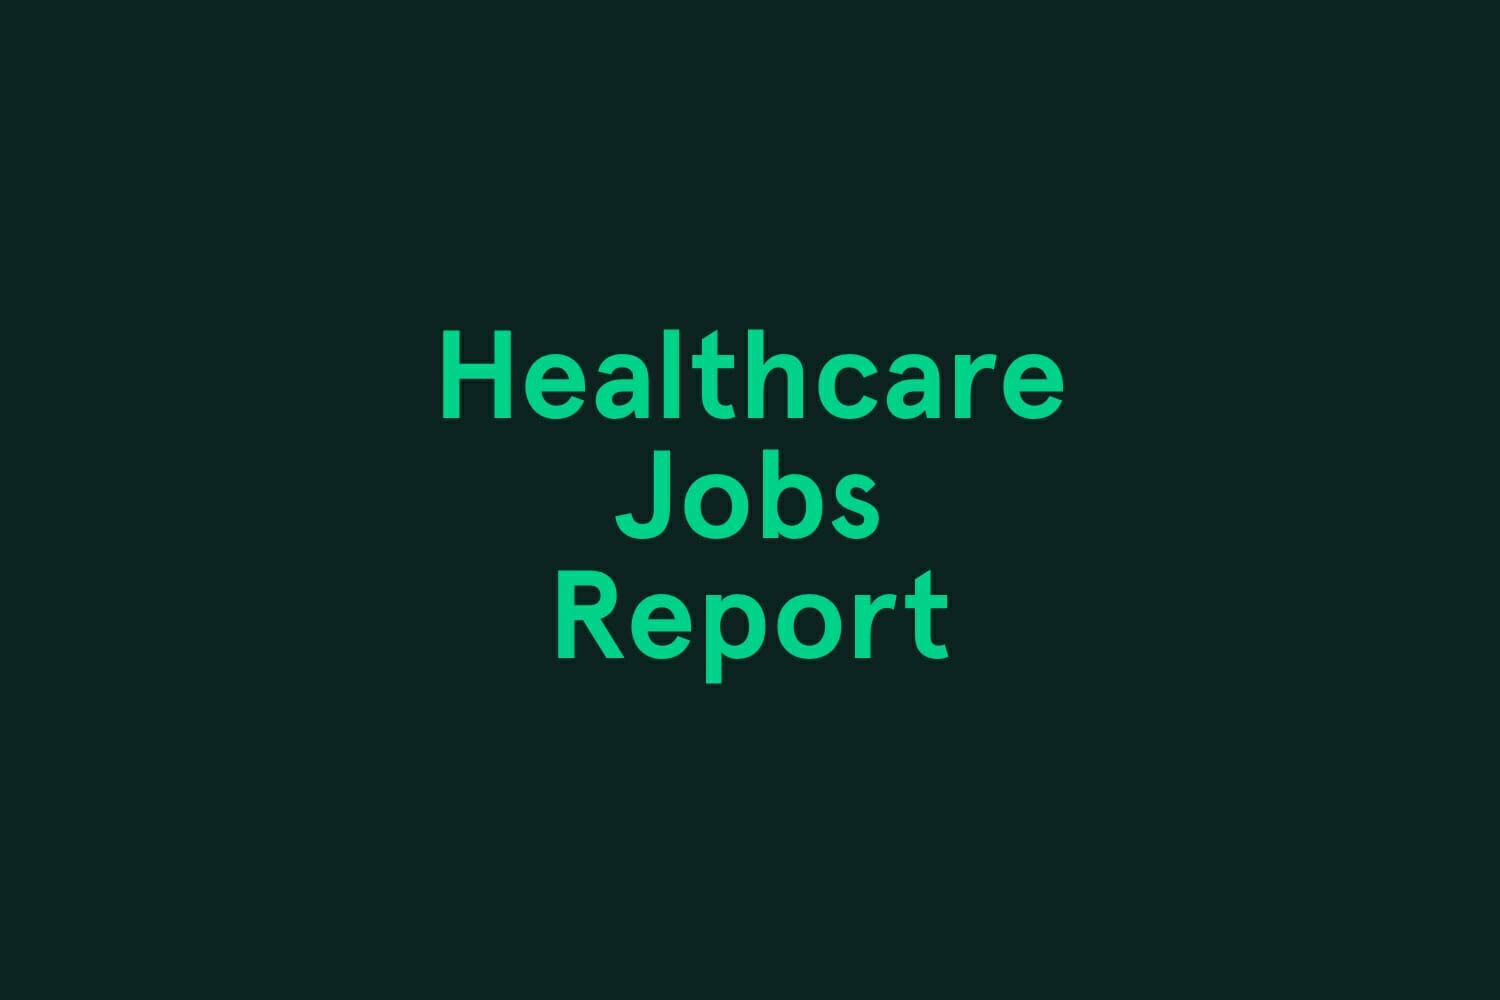 June Healthcare Jobs Report Infographic